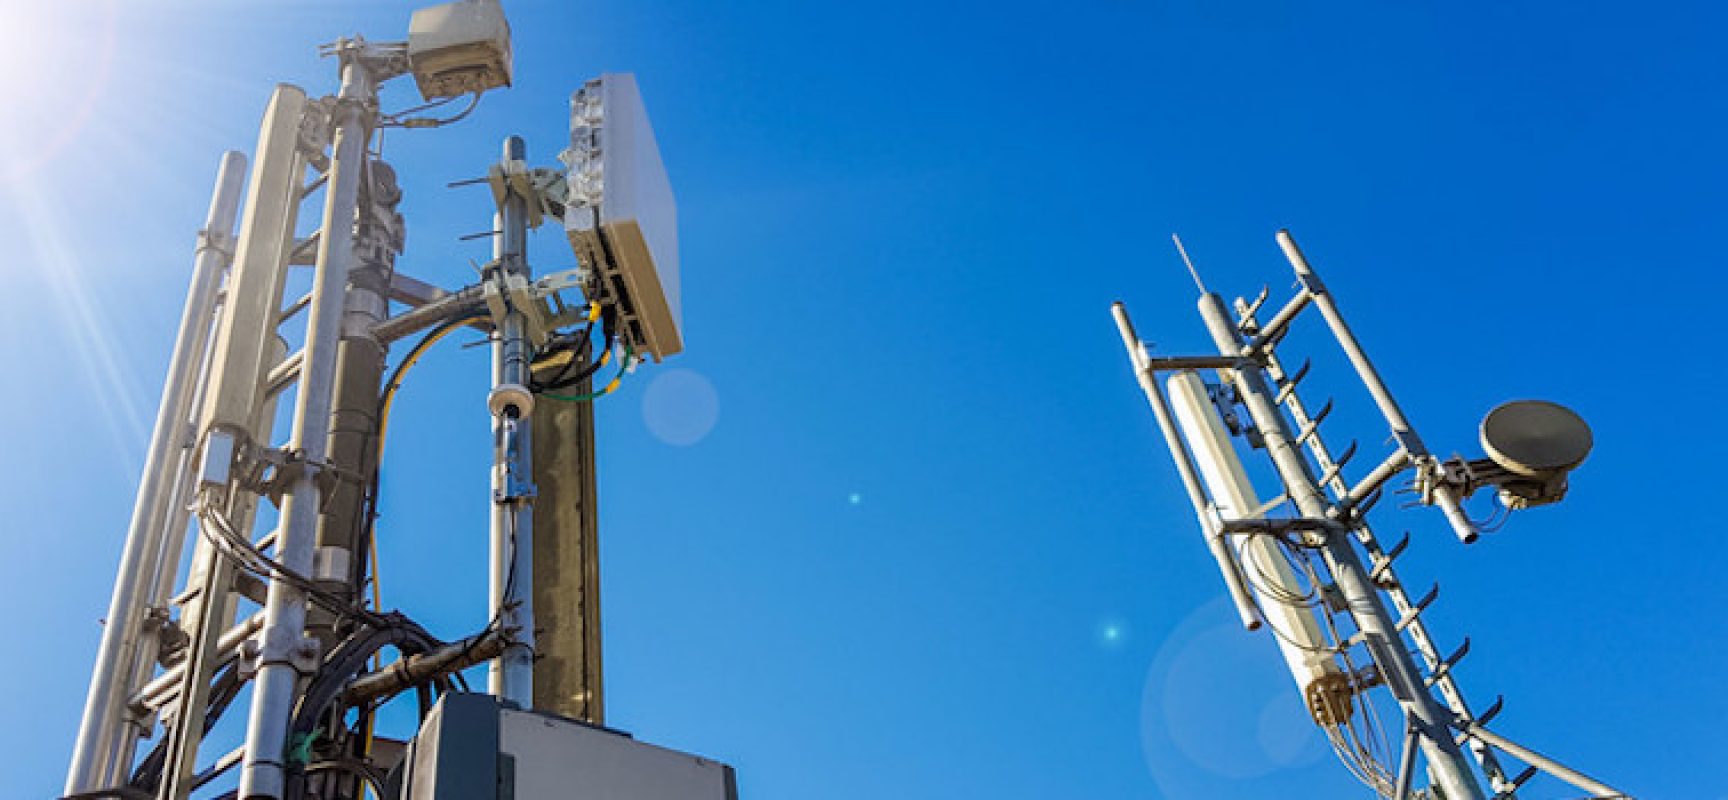 NelModoGiusto chiede all’amministrazione di fermare installazione antenne 5G a Bisceglie